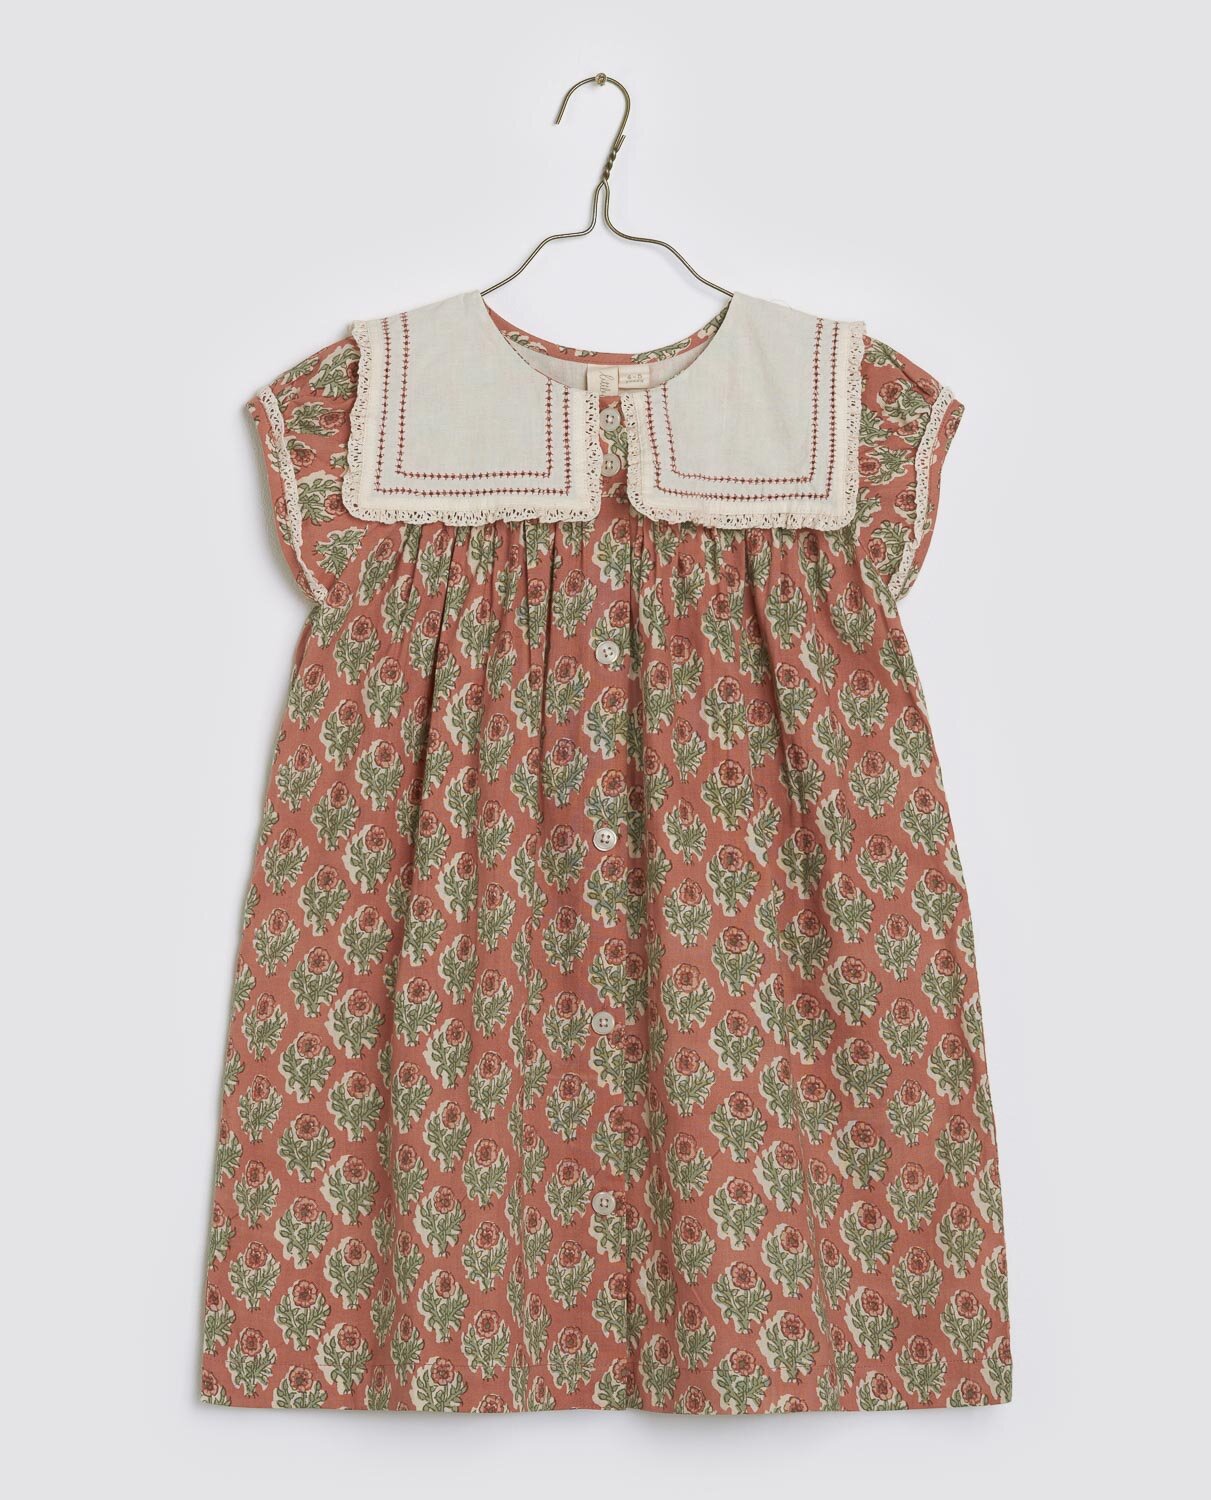 LITTLE COTTON CLOTHES NOVA DRESS / SUMMER JAM FLORAL